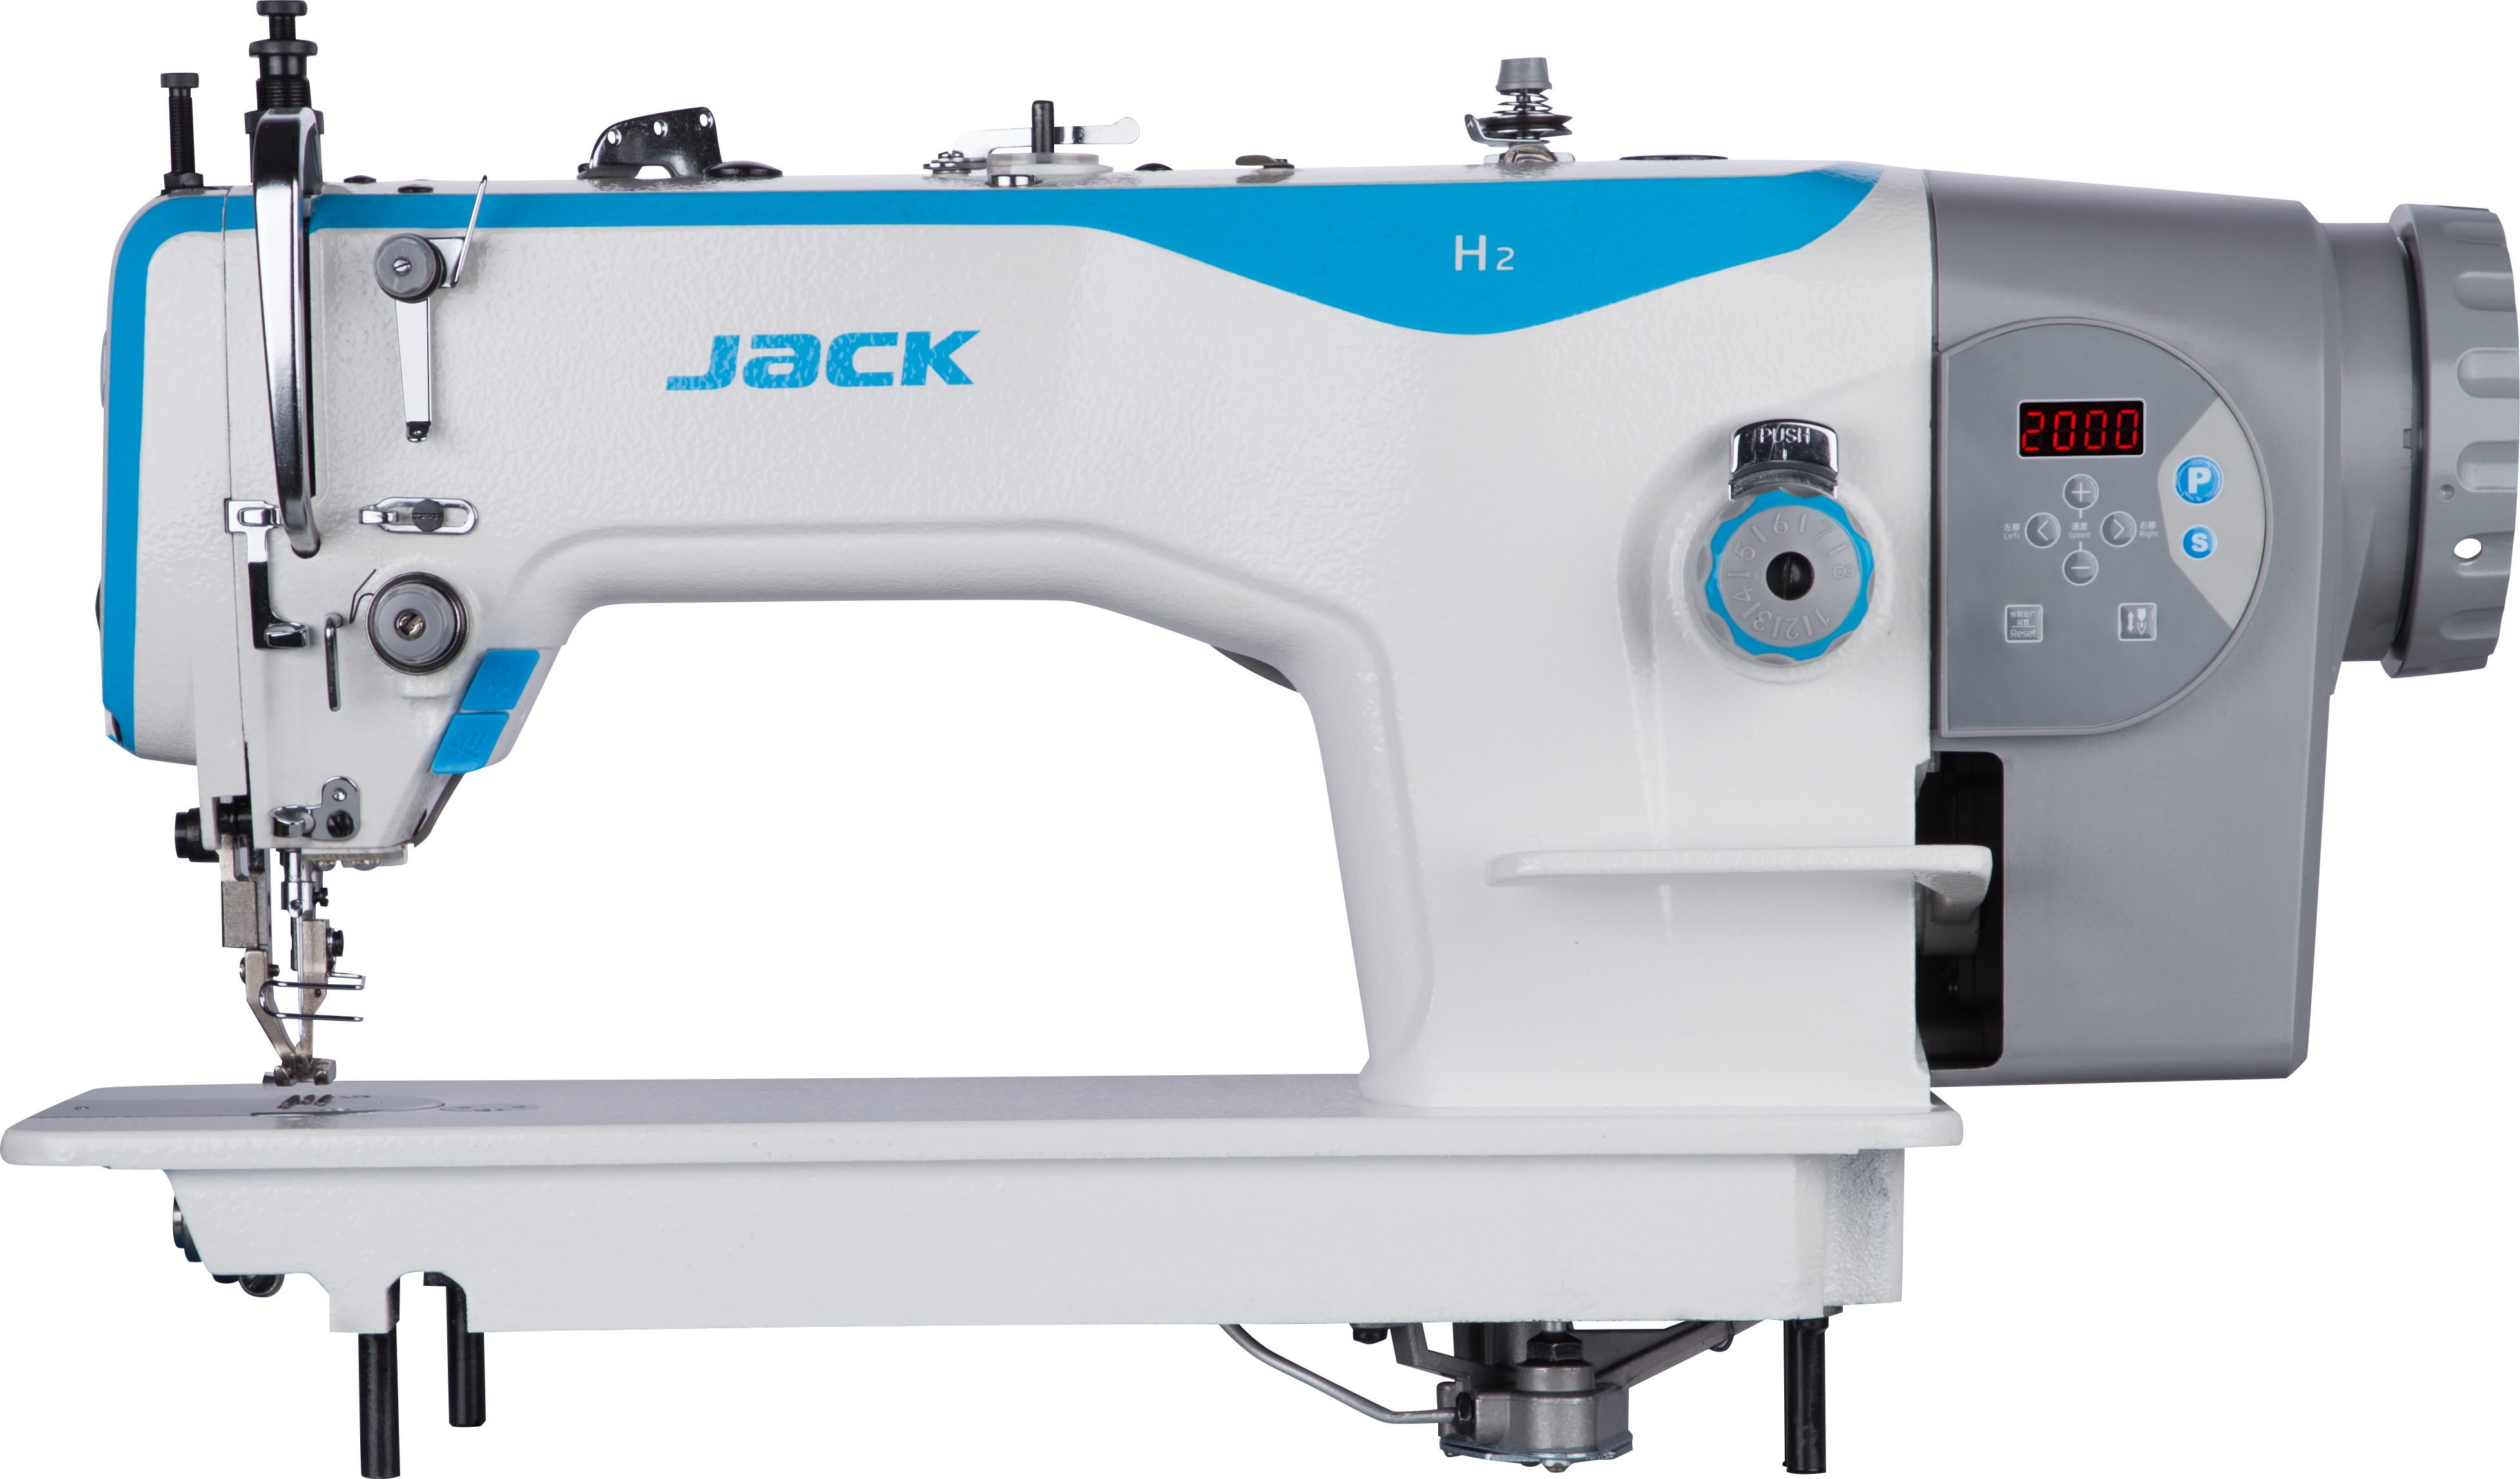 Промышленная прямострочная швейная машина купить. Швейная машина Jack h5 cz4. Промышленная швейная машина Jack h2-cz. Промышленная швейная машина Jack h2-cz-12. Jack JK-h2-cz-12.